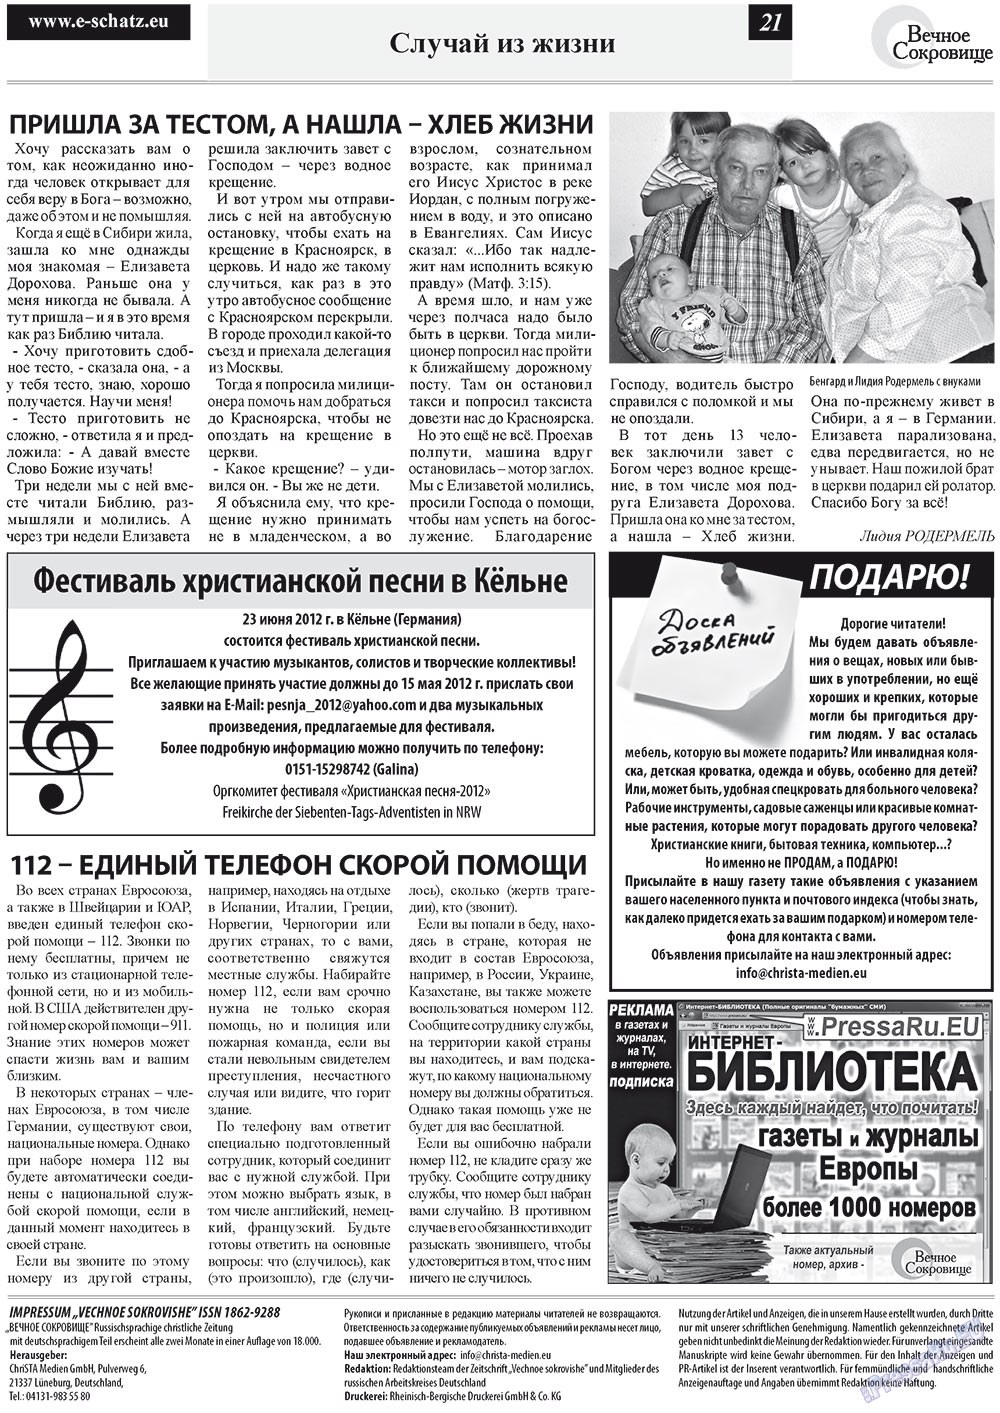 Вечное сокровище, газета. 2012 №2 стр.21